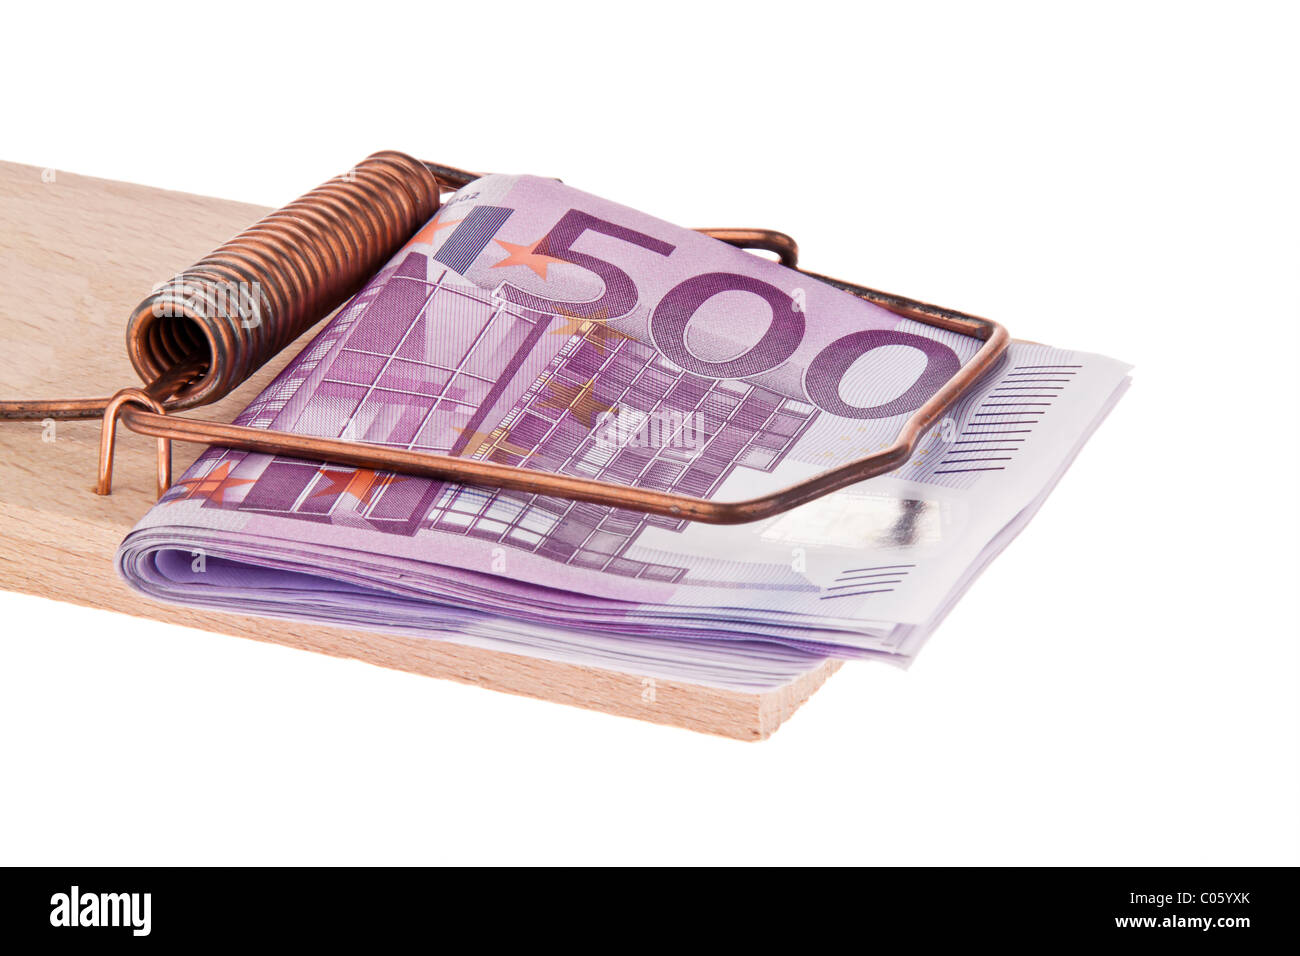 Euro bank notes in a mousetrap. Stock Photo